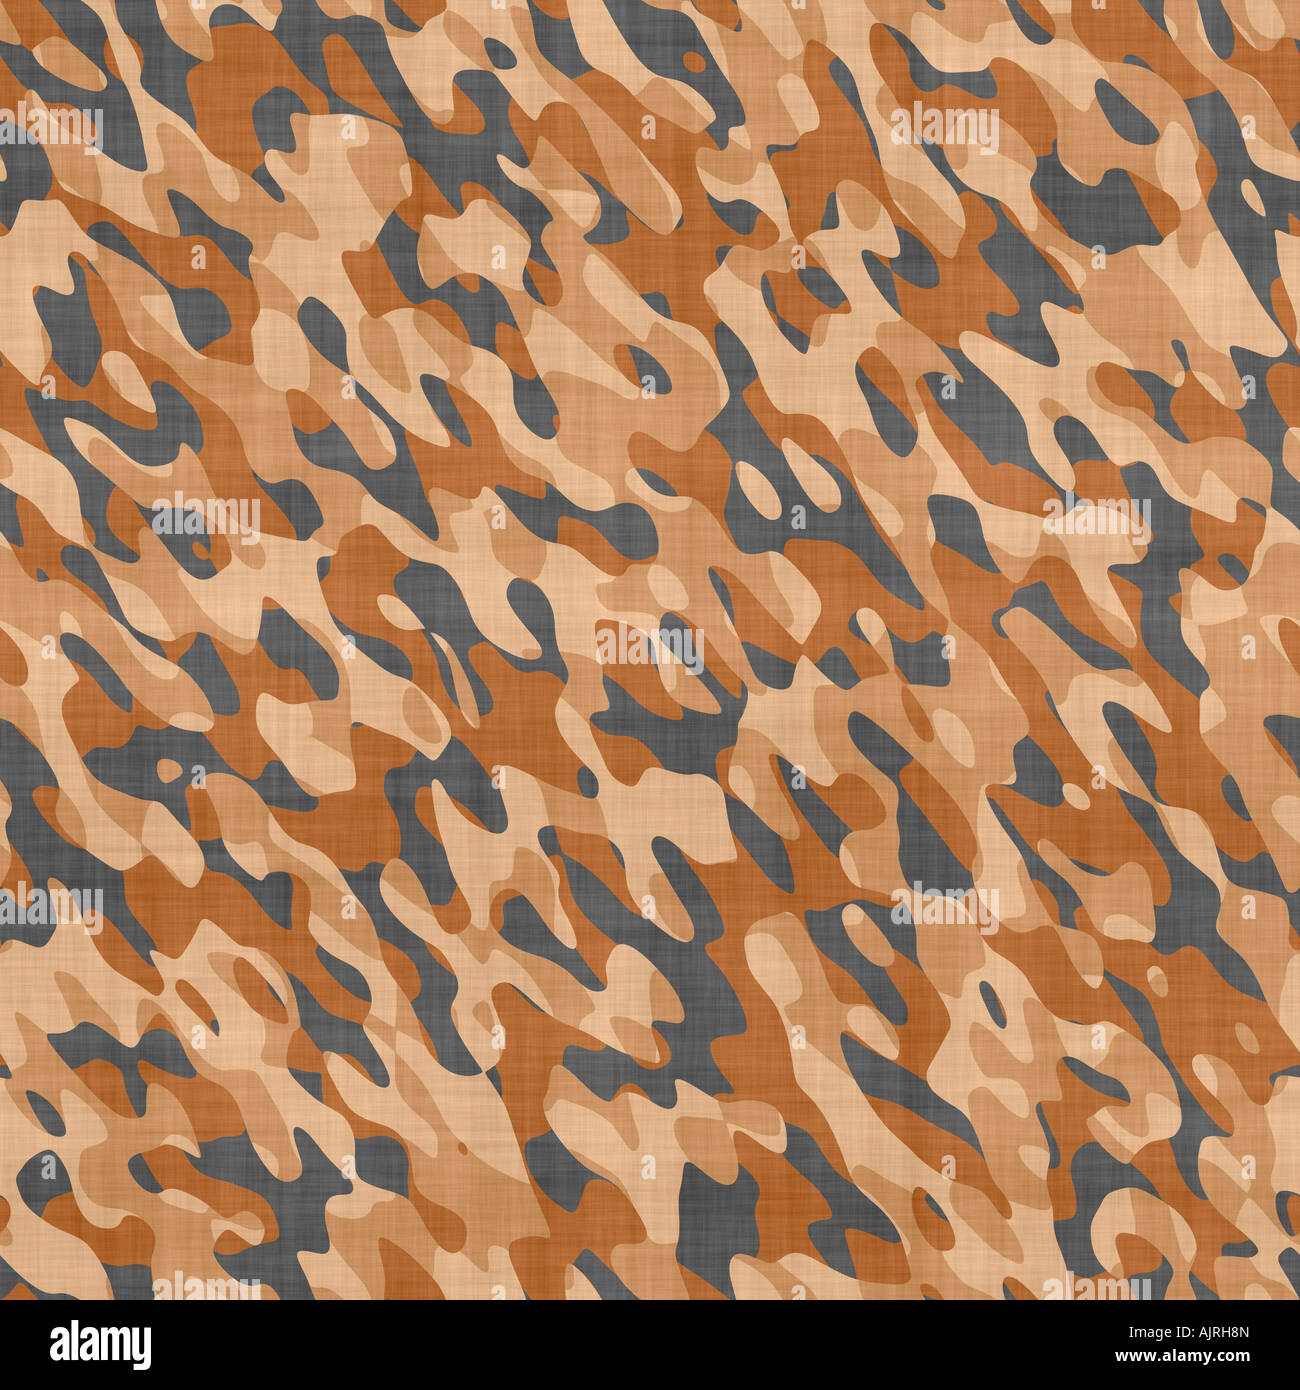 Grand seamless Image de tissu imprimé avec motif de camouflage militaire Banque D'Images